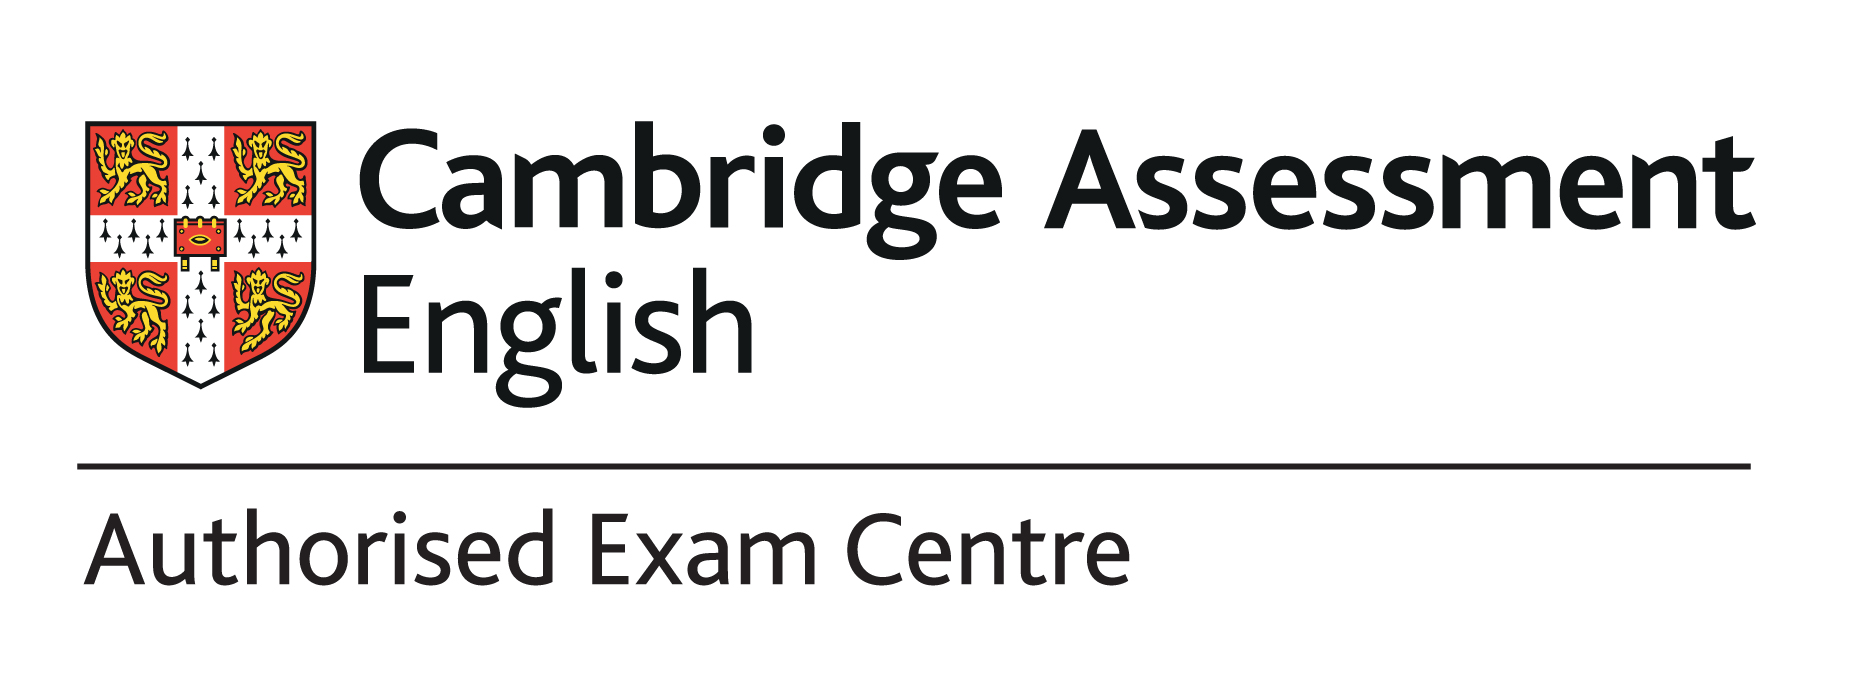 Cambridge Authorised Exam Centre